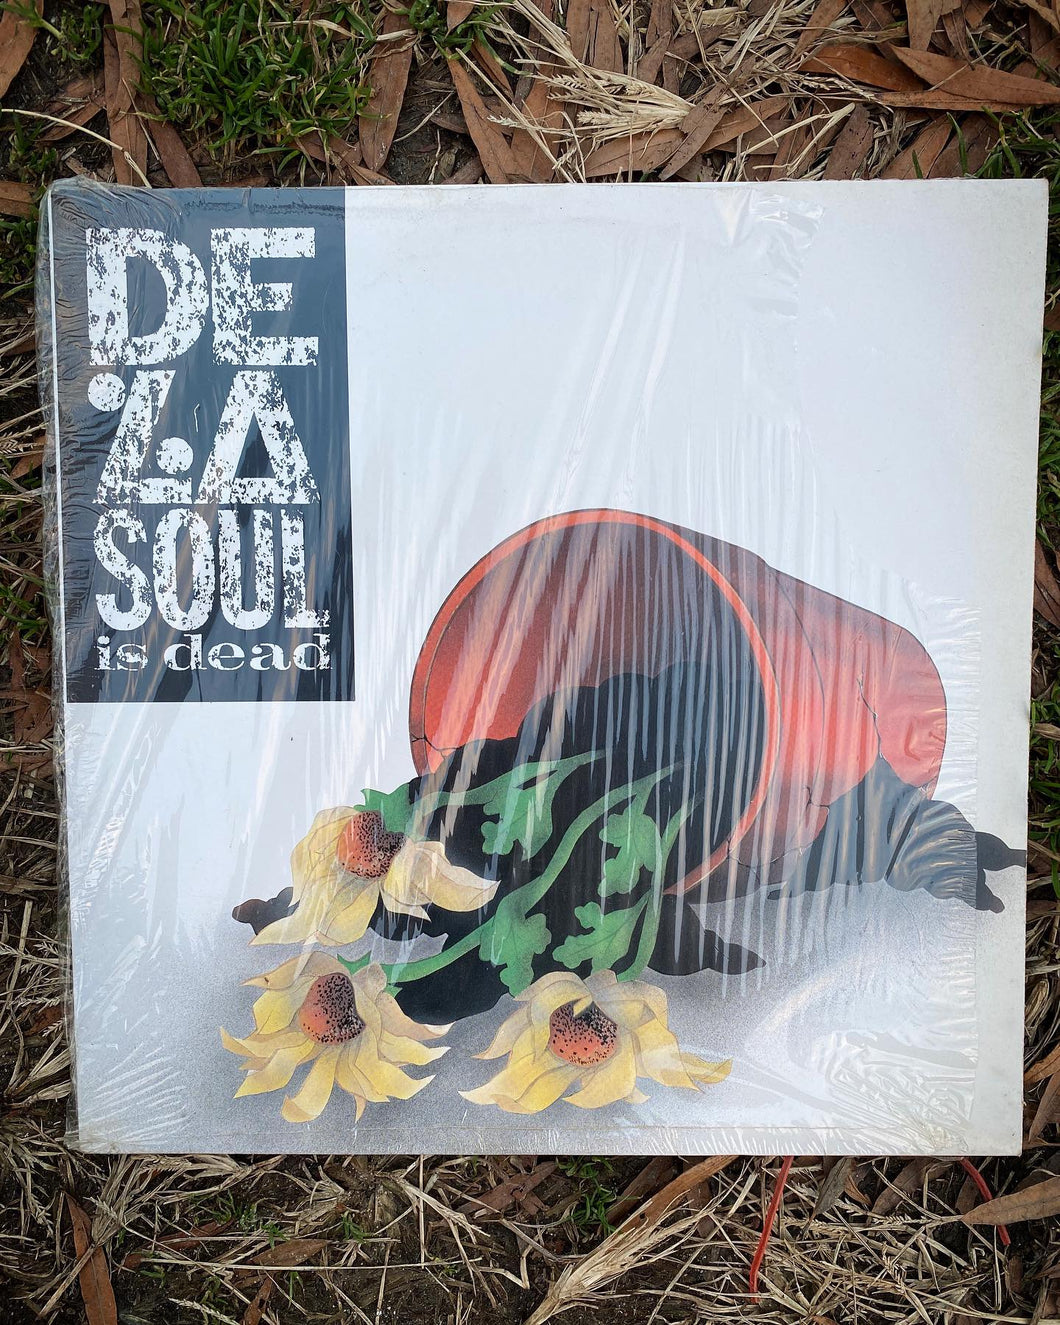 De La Soul - Is Dead